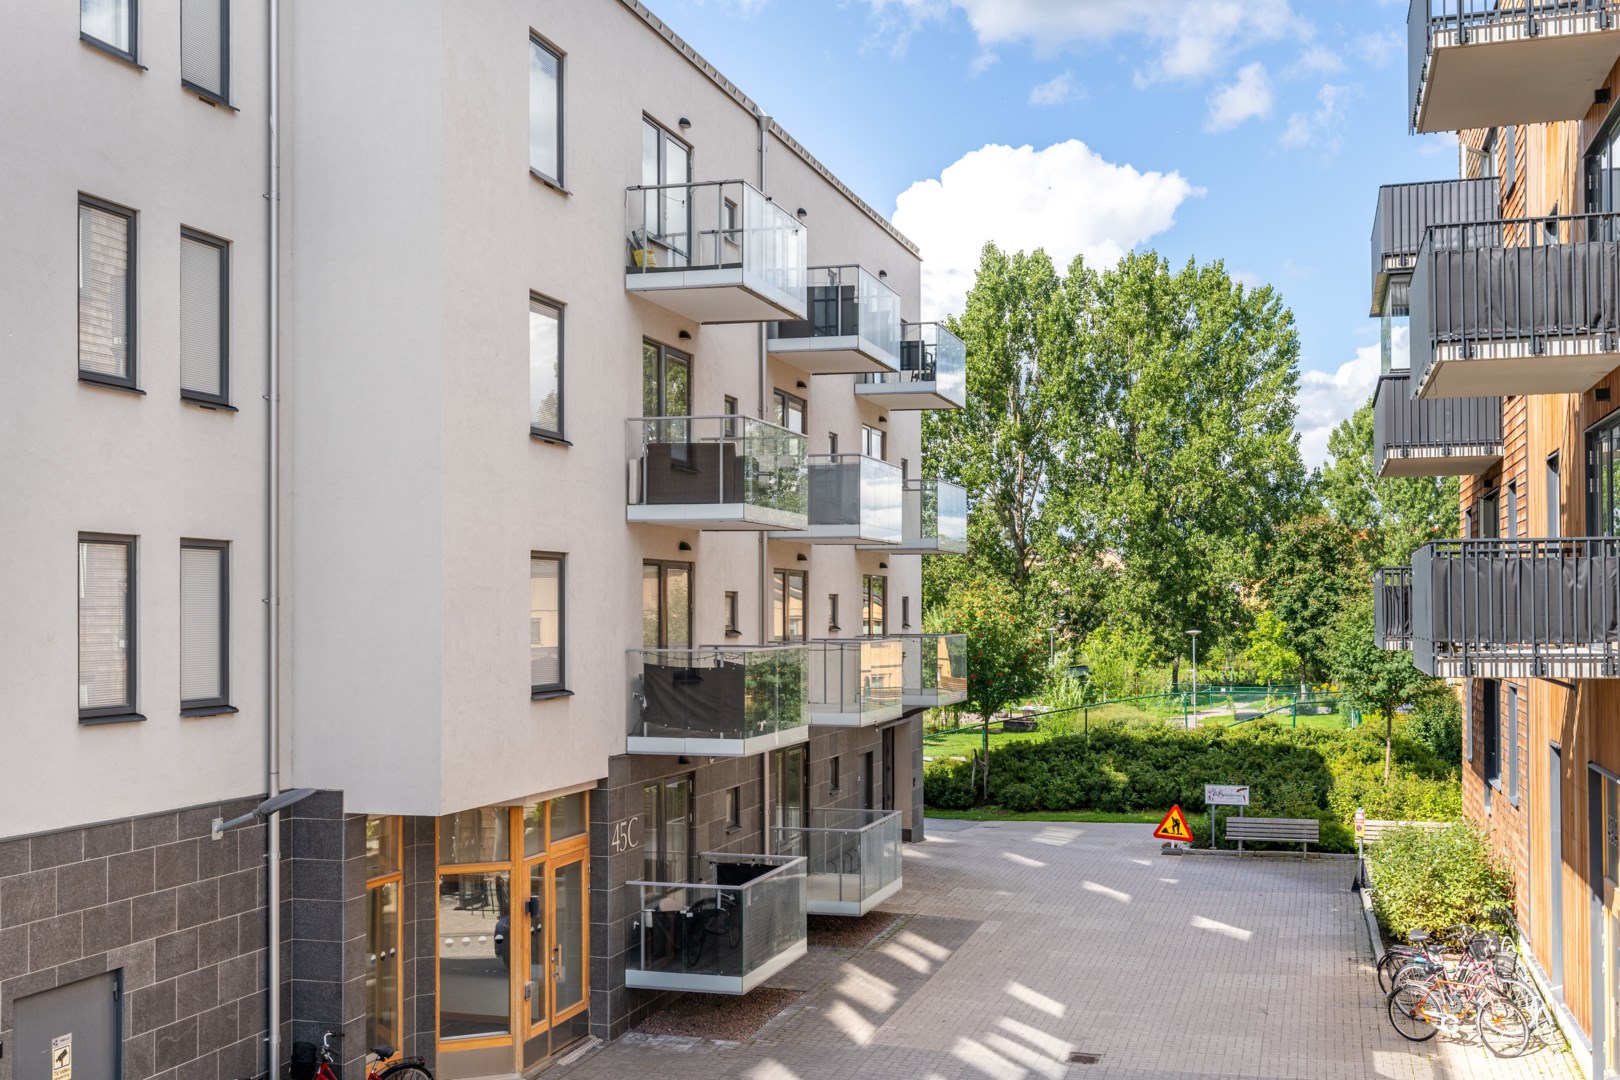 Bostadsrätt i Södra Ladugårdsängen, Örebro, Sverige, Termikgatan 45C